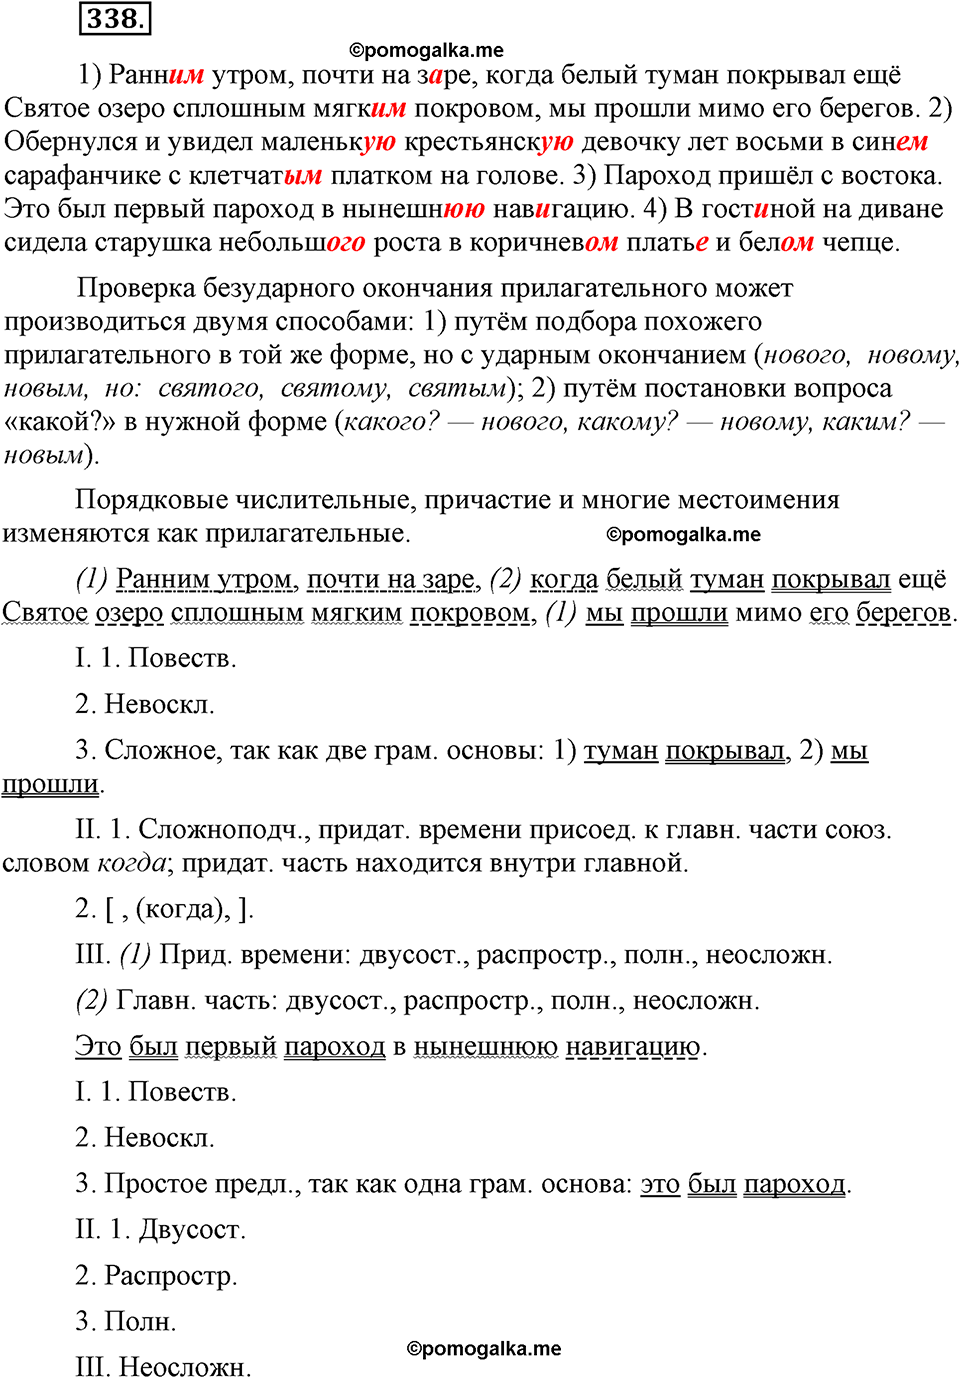 страница 155 номер 338 русский язык 9 класс Бархударов 2011 год